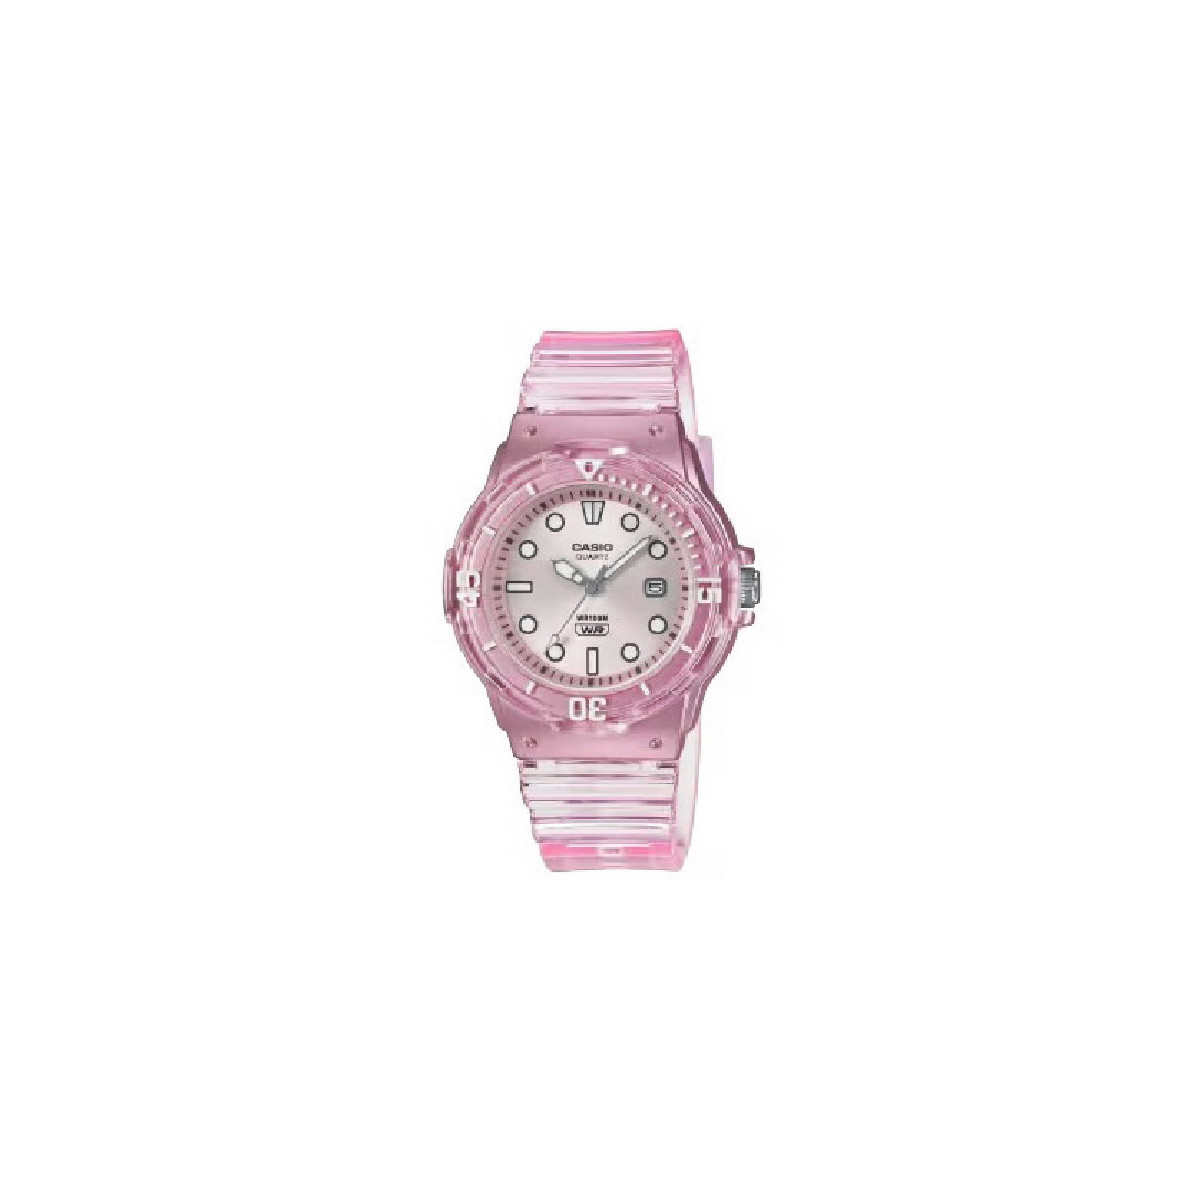 Reloj Casio Collection Rosa Translúcido